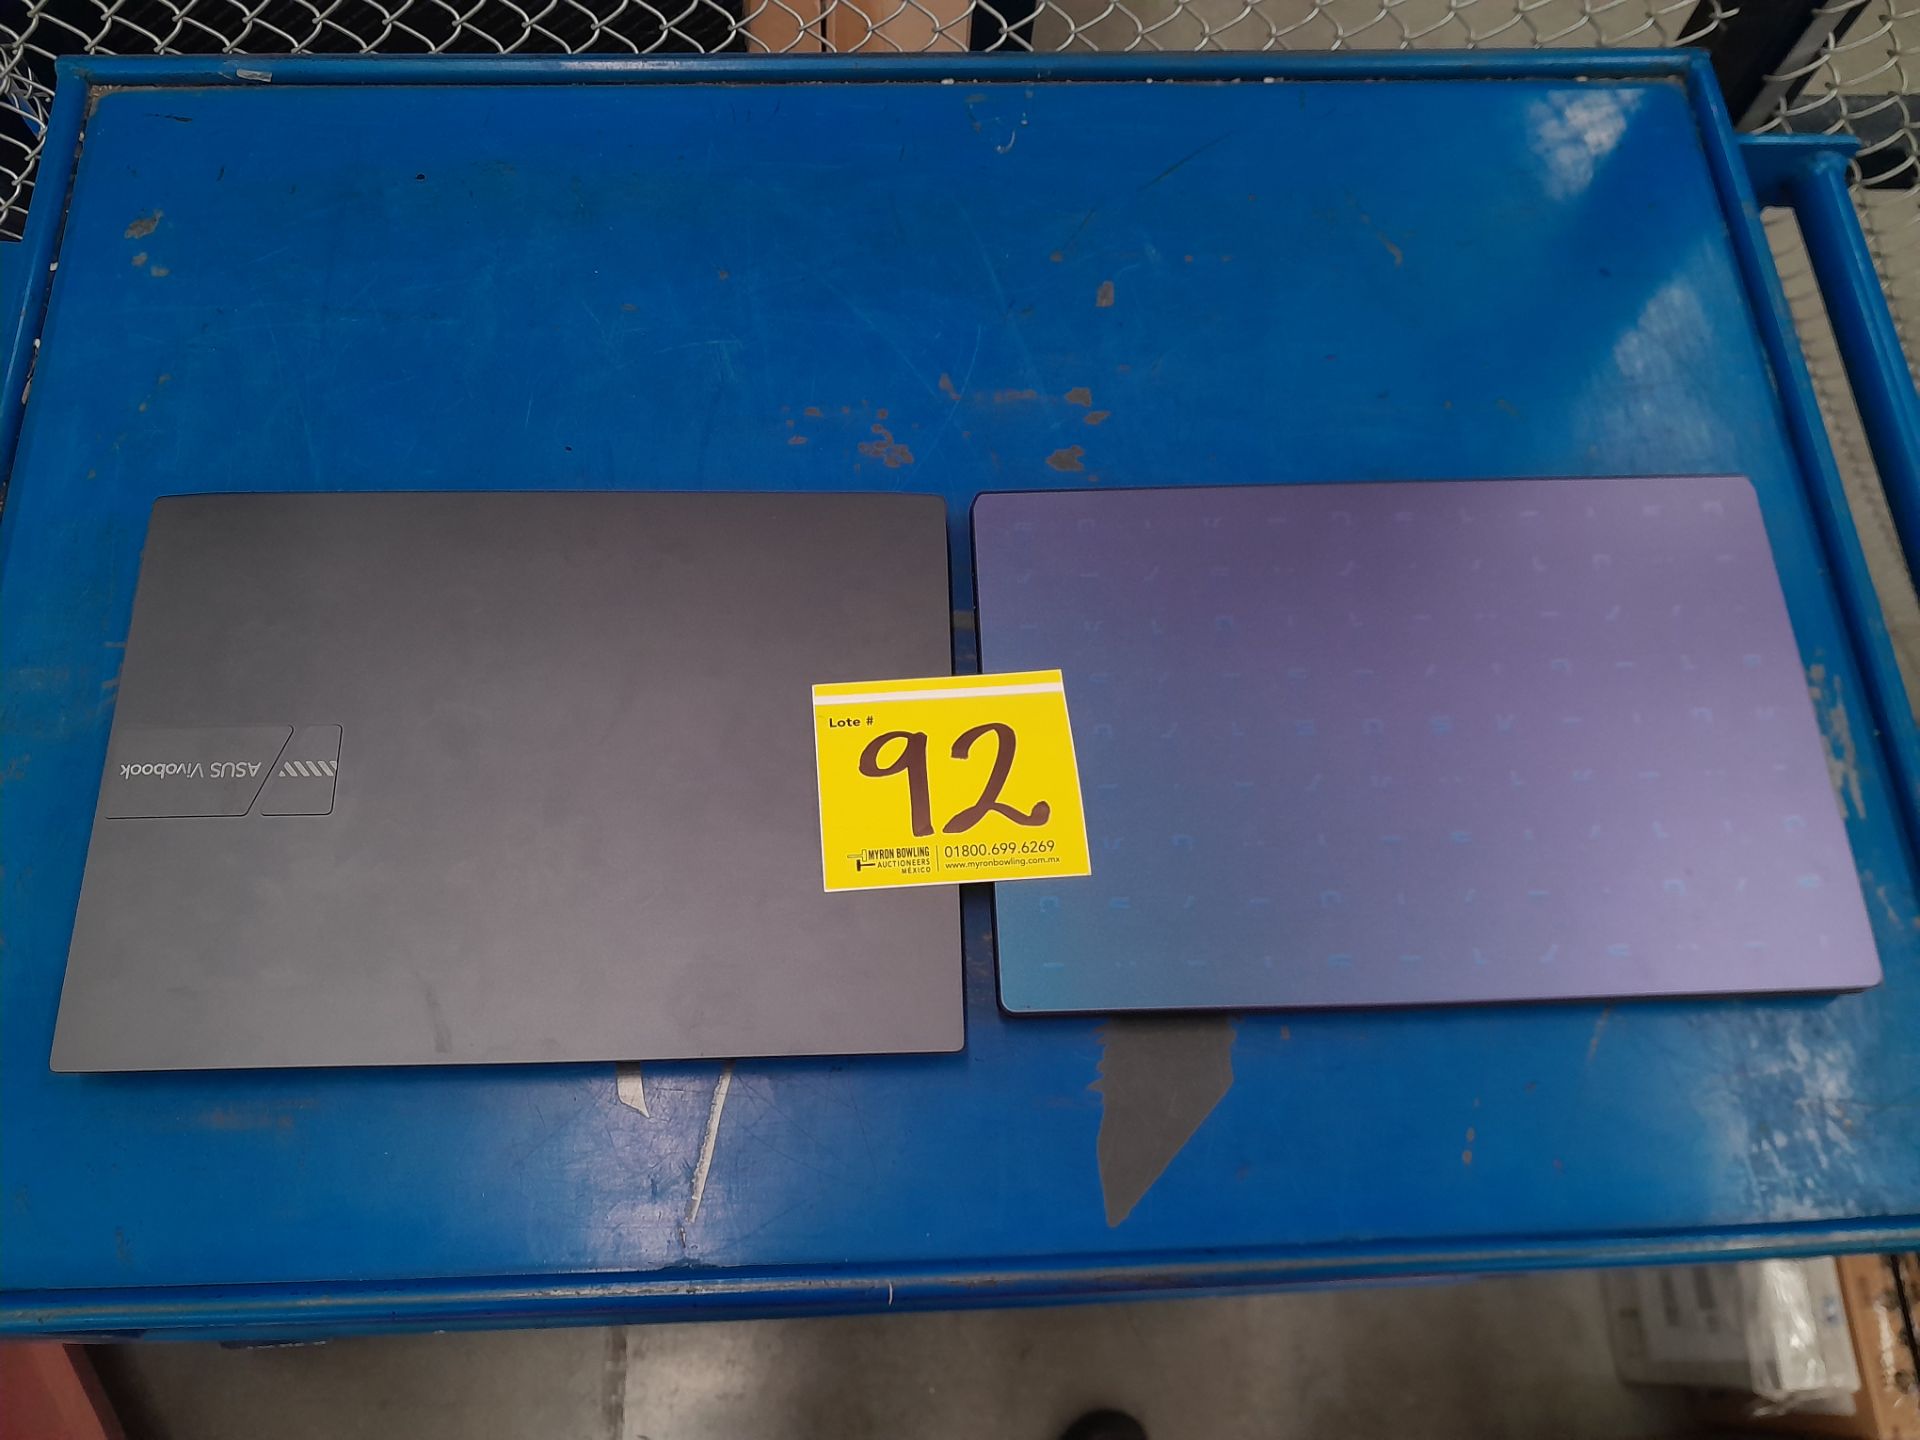 Lote de 2 laptops contiene: 1 Laptop Marca ASUS, Modelo R429M, Serie 192032, Color GRIS, Procesador - Image 4 of 5